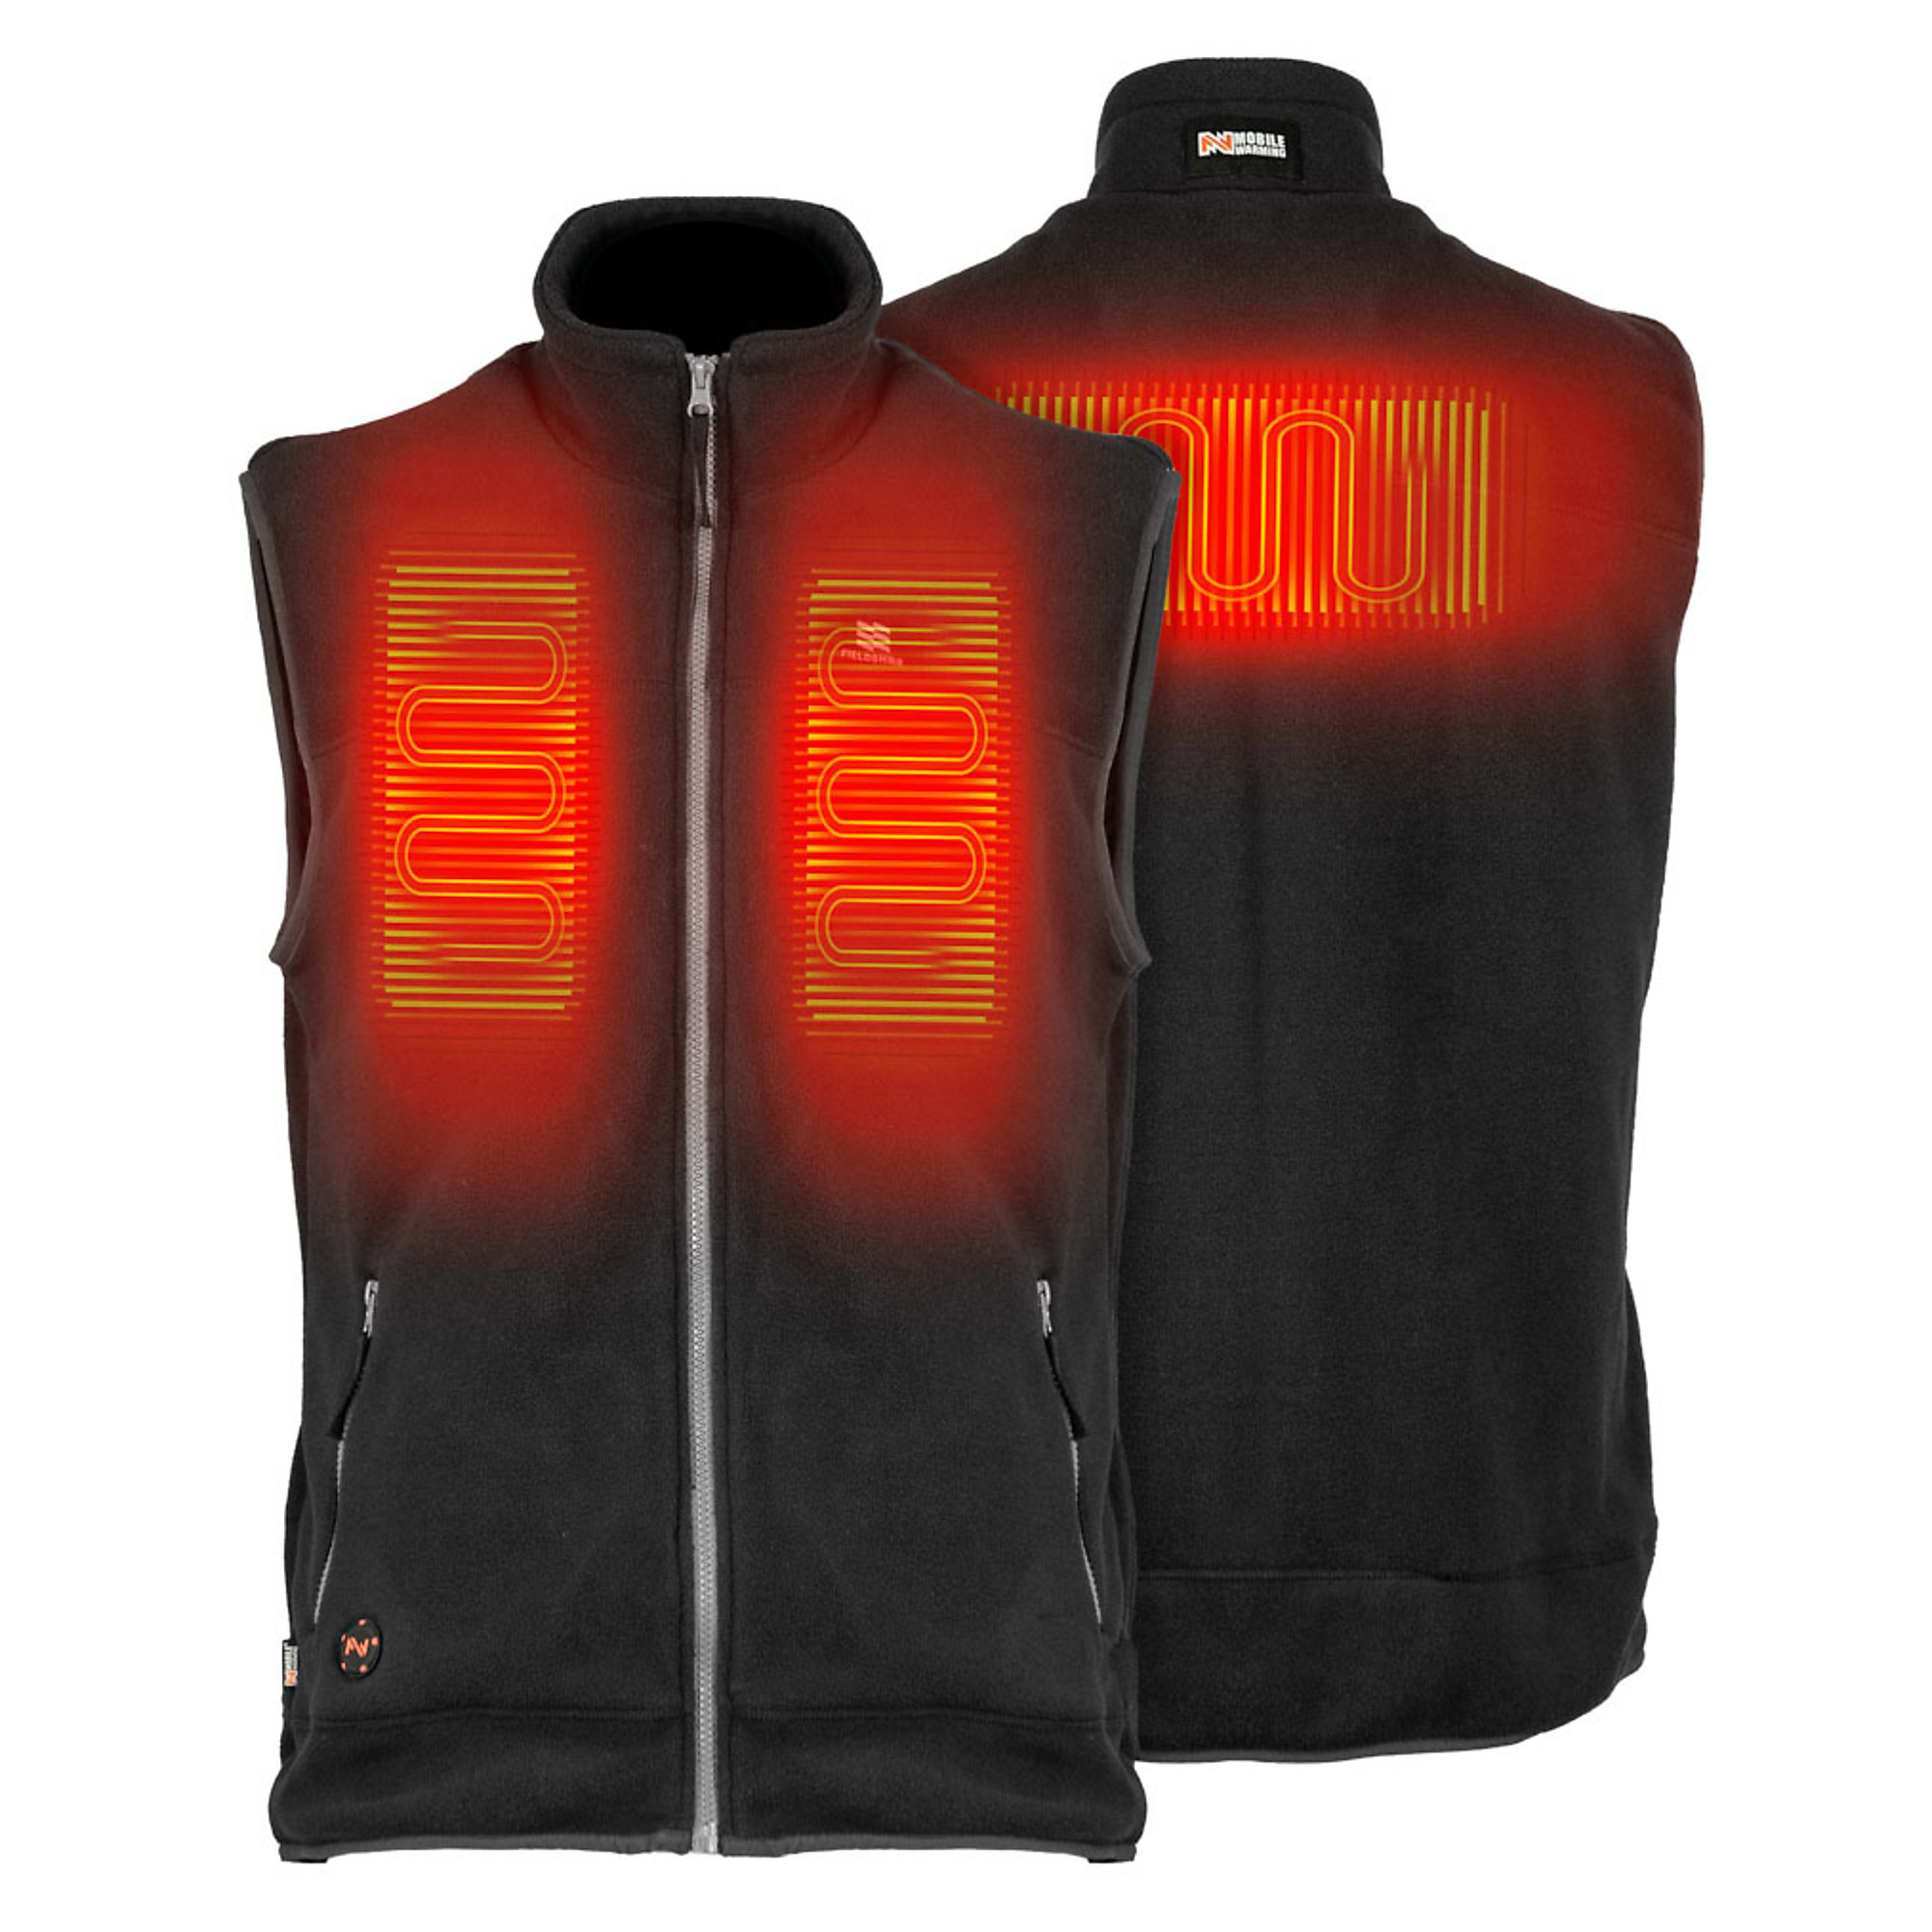 Fieldsheer, Men's Trek Heated Vest with 7.4v Battery, Size M, Color Black, Model MWMV17010322